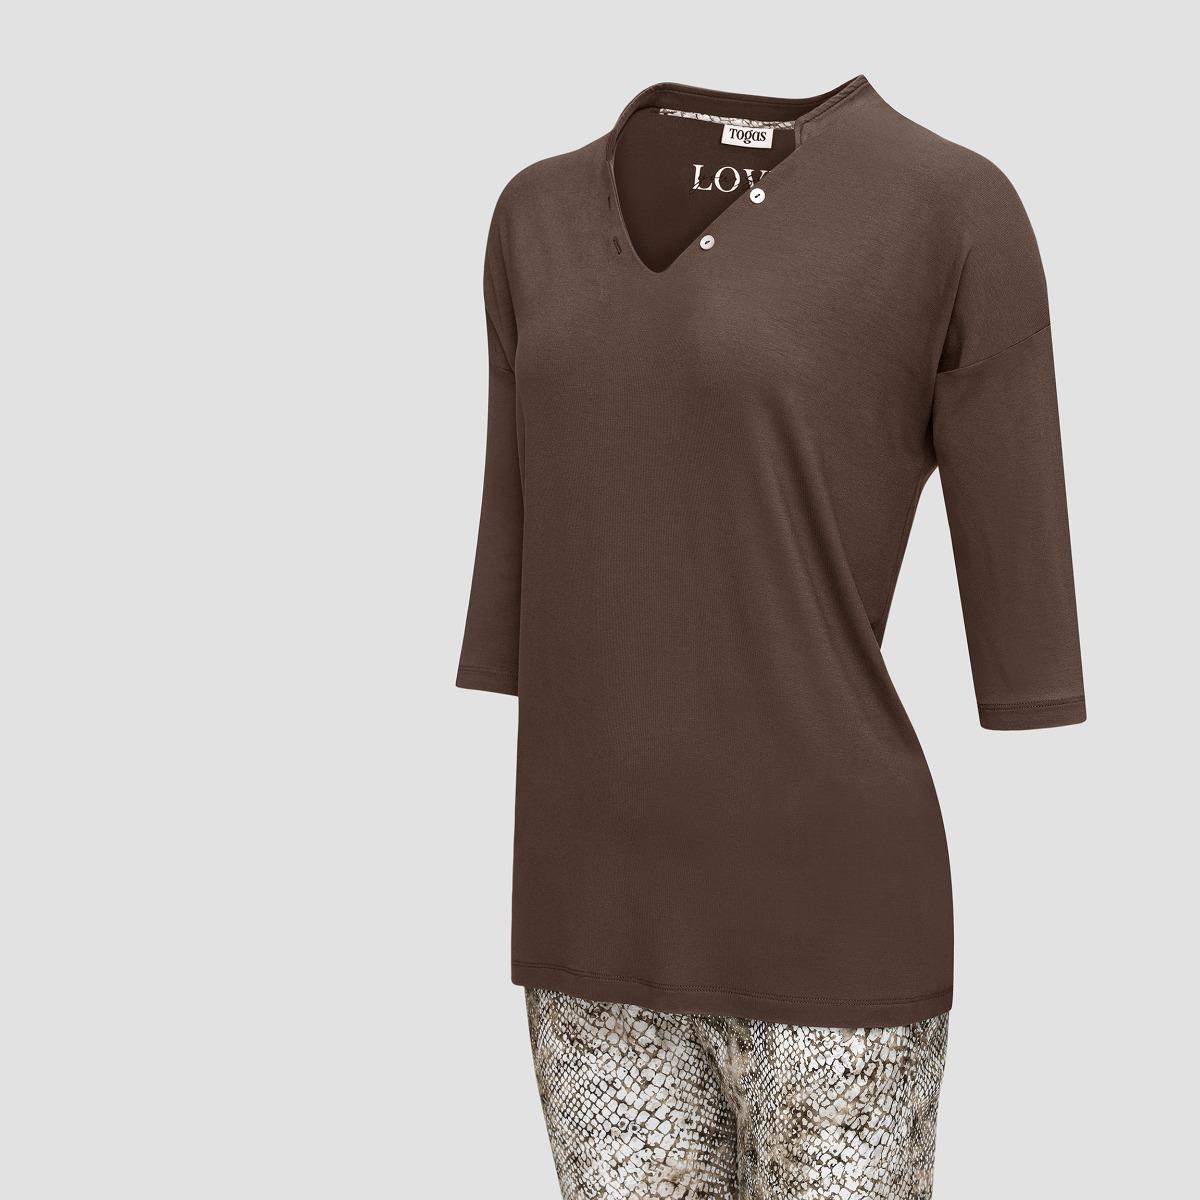 Пижама Togas Селиса коричневая женская l(48), цвет коричневый, размер L (48) - фото 2